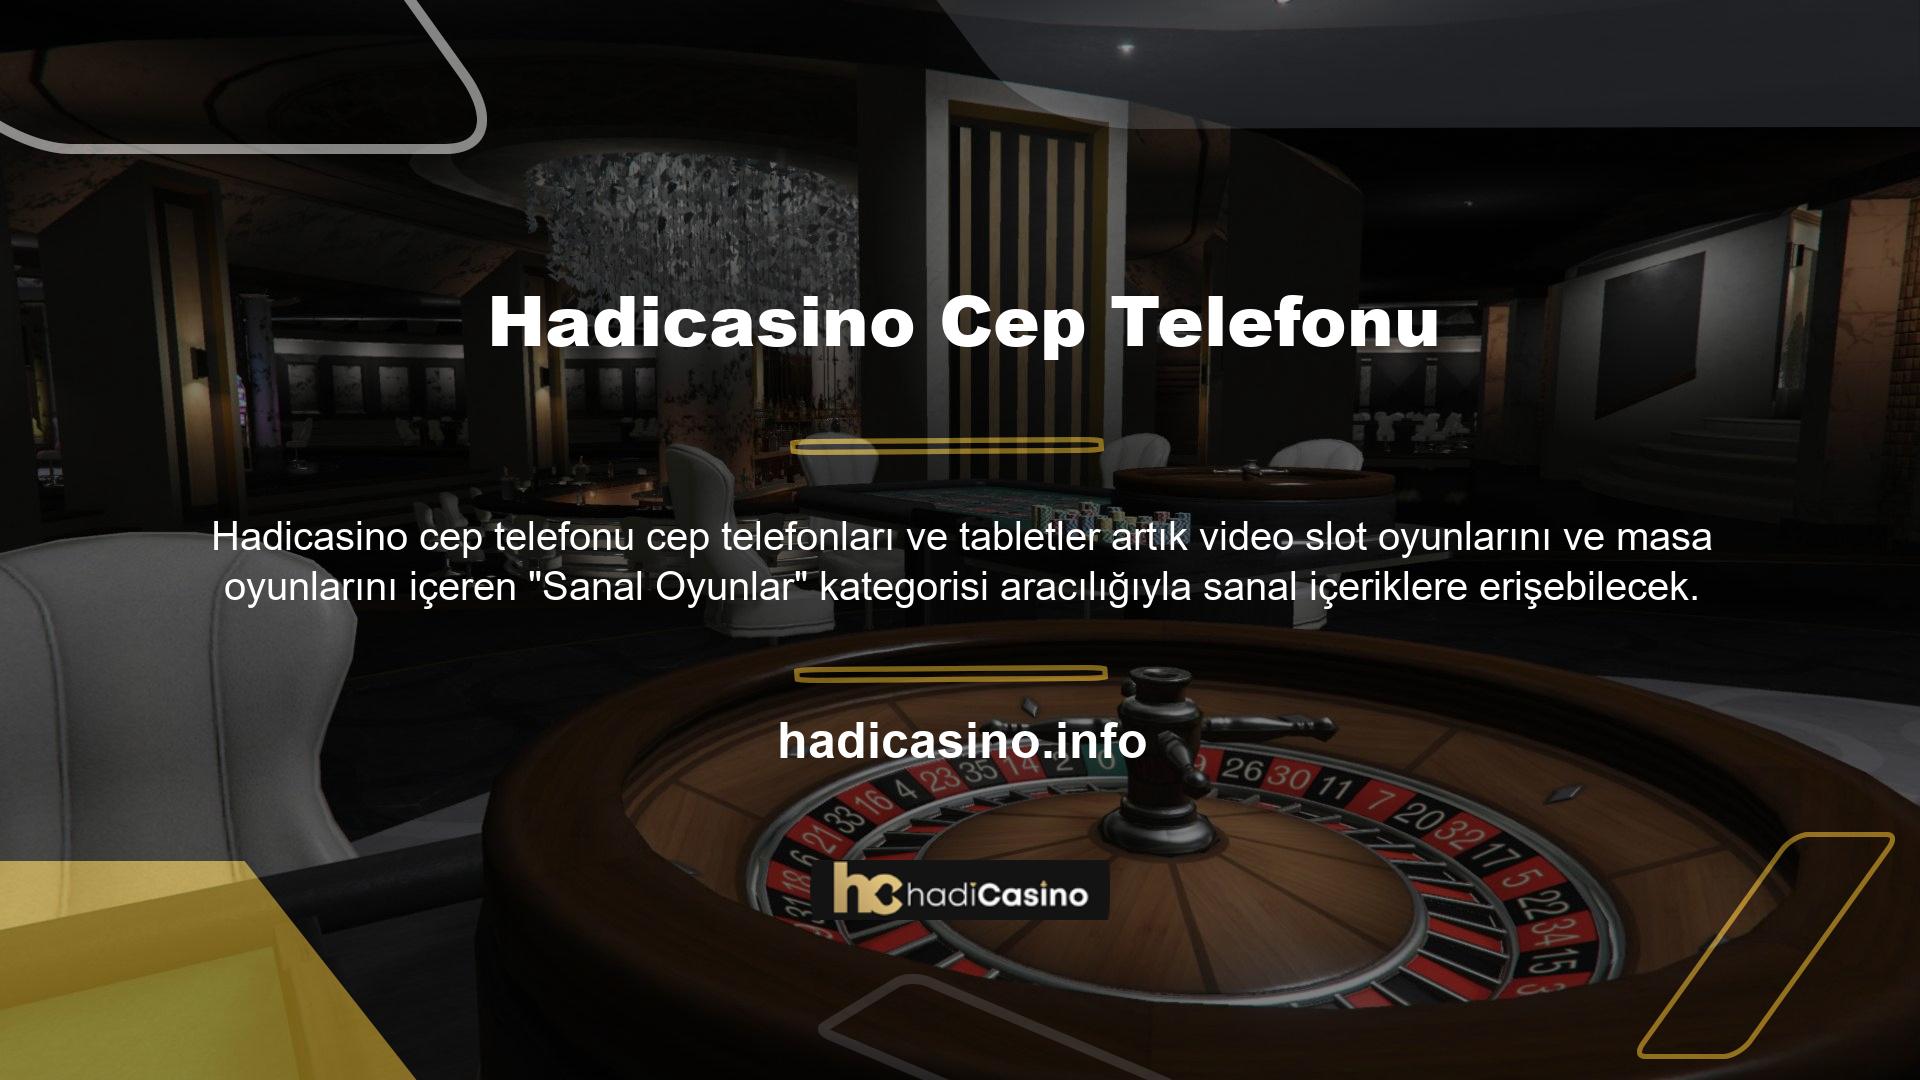 Bilgisayarınızdan ve yeni bir web sitesinden bahis oynayabileceğiniz Hadicasino Sanal Oyunları ile mobil bağlantı için tüm güvenli bağlantı özelliklerine erişin